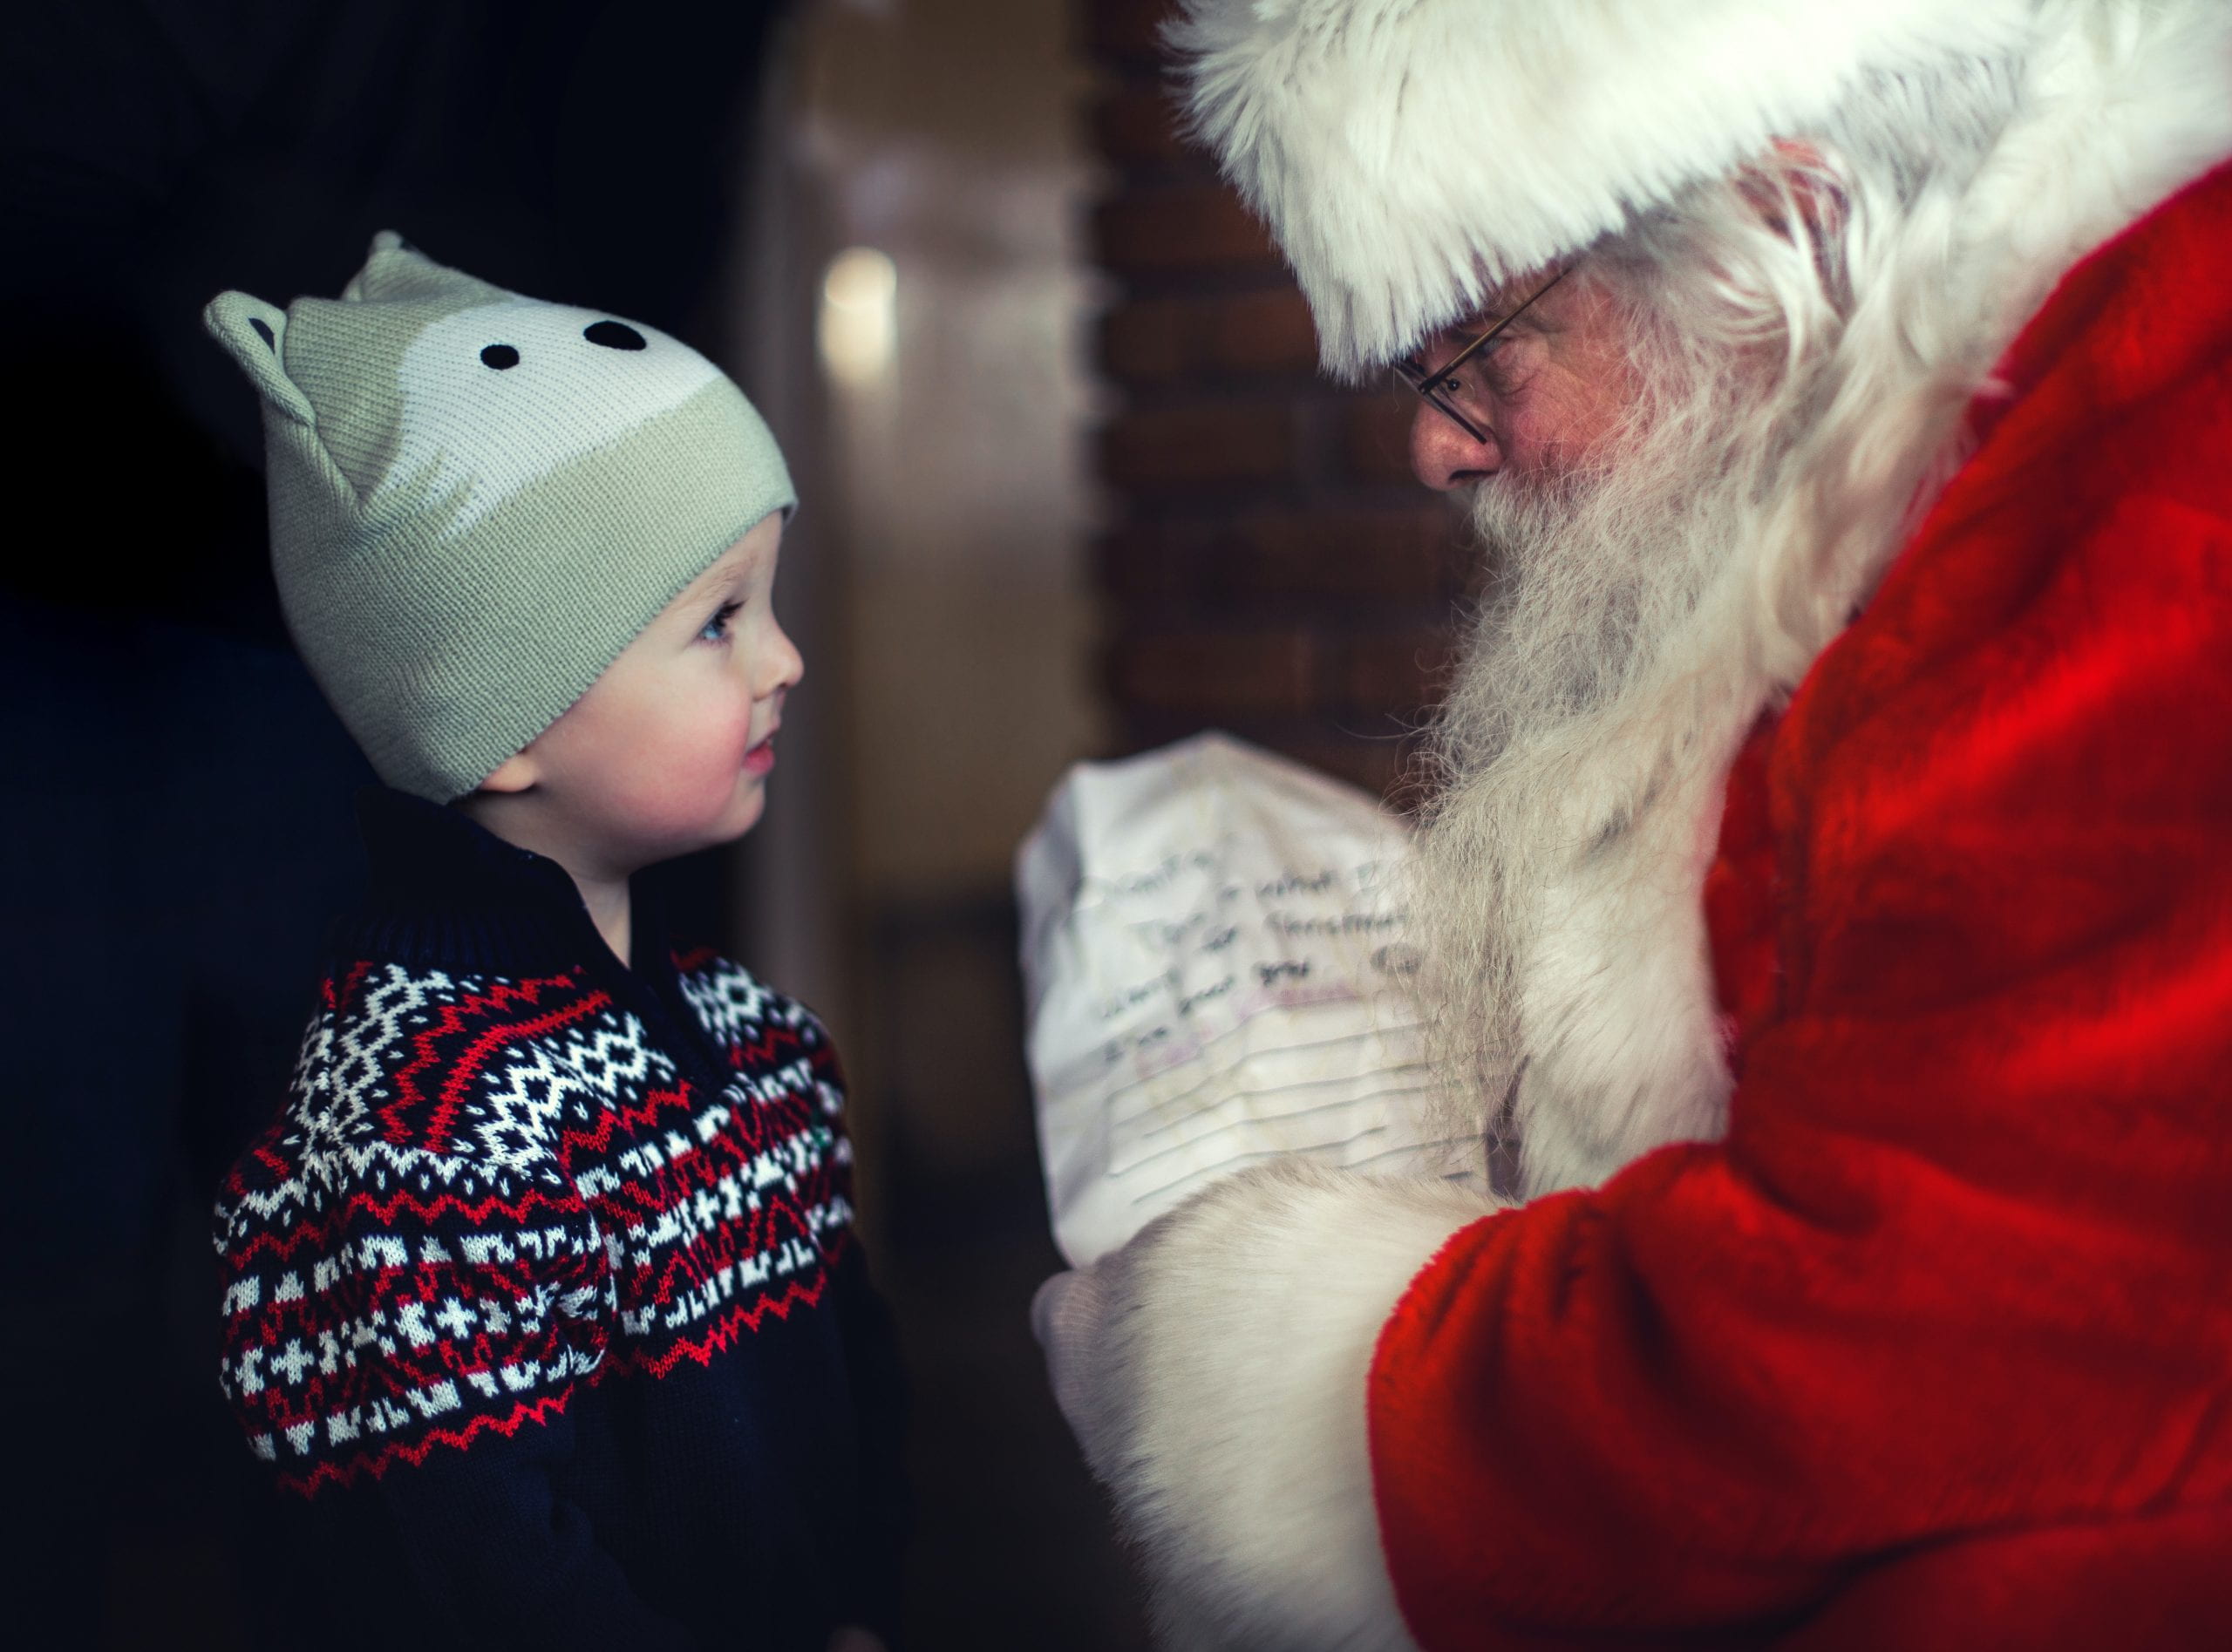 Santa giving a young boy a present.